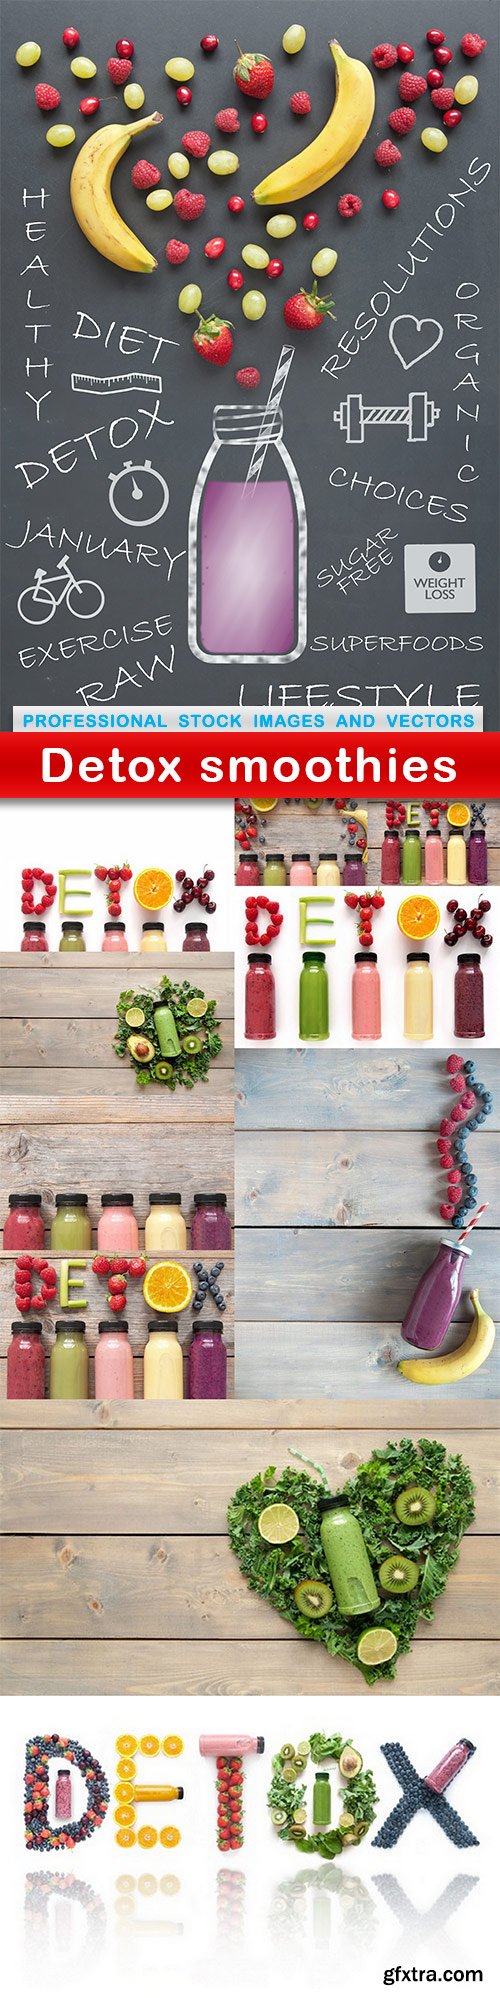 Detox smoothies - 11 UHQ JPEG